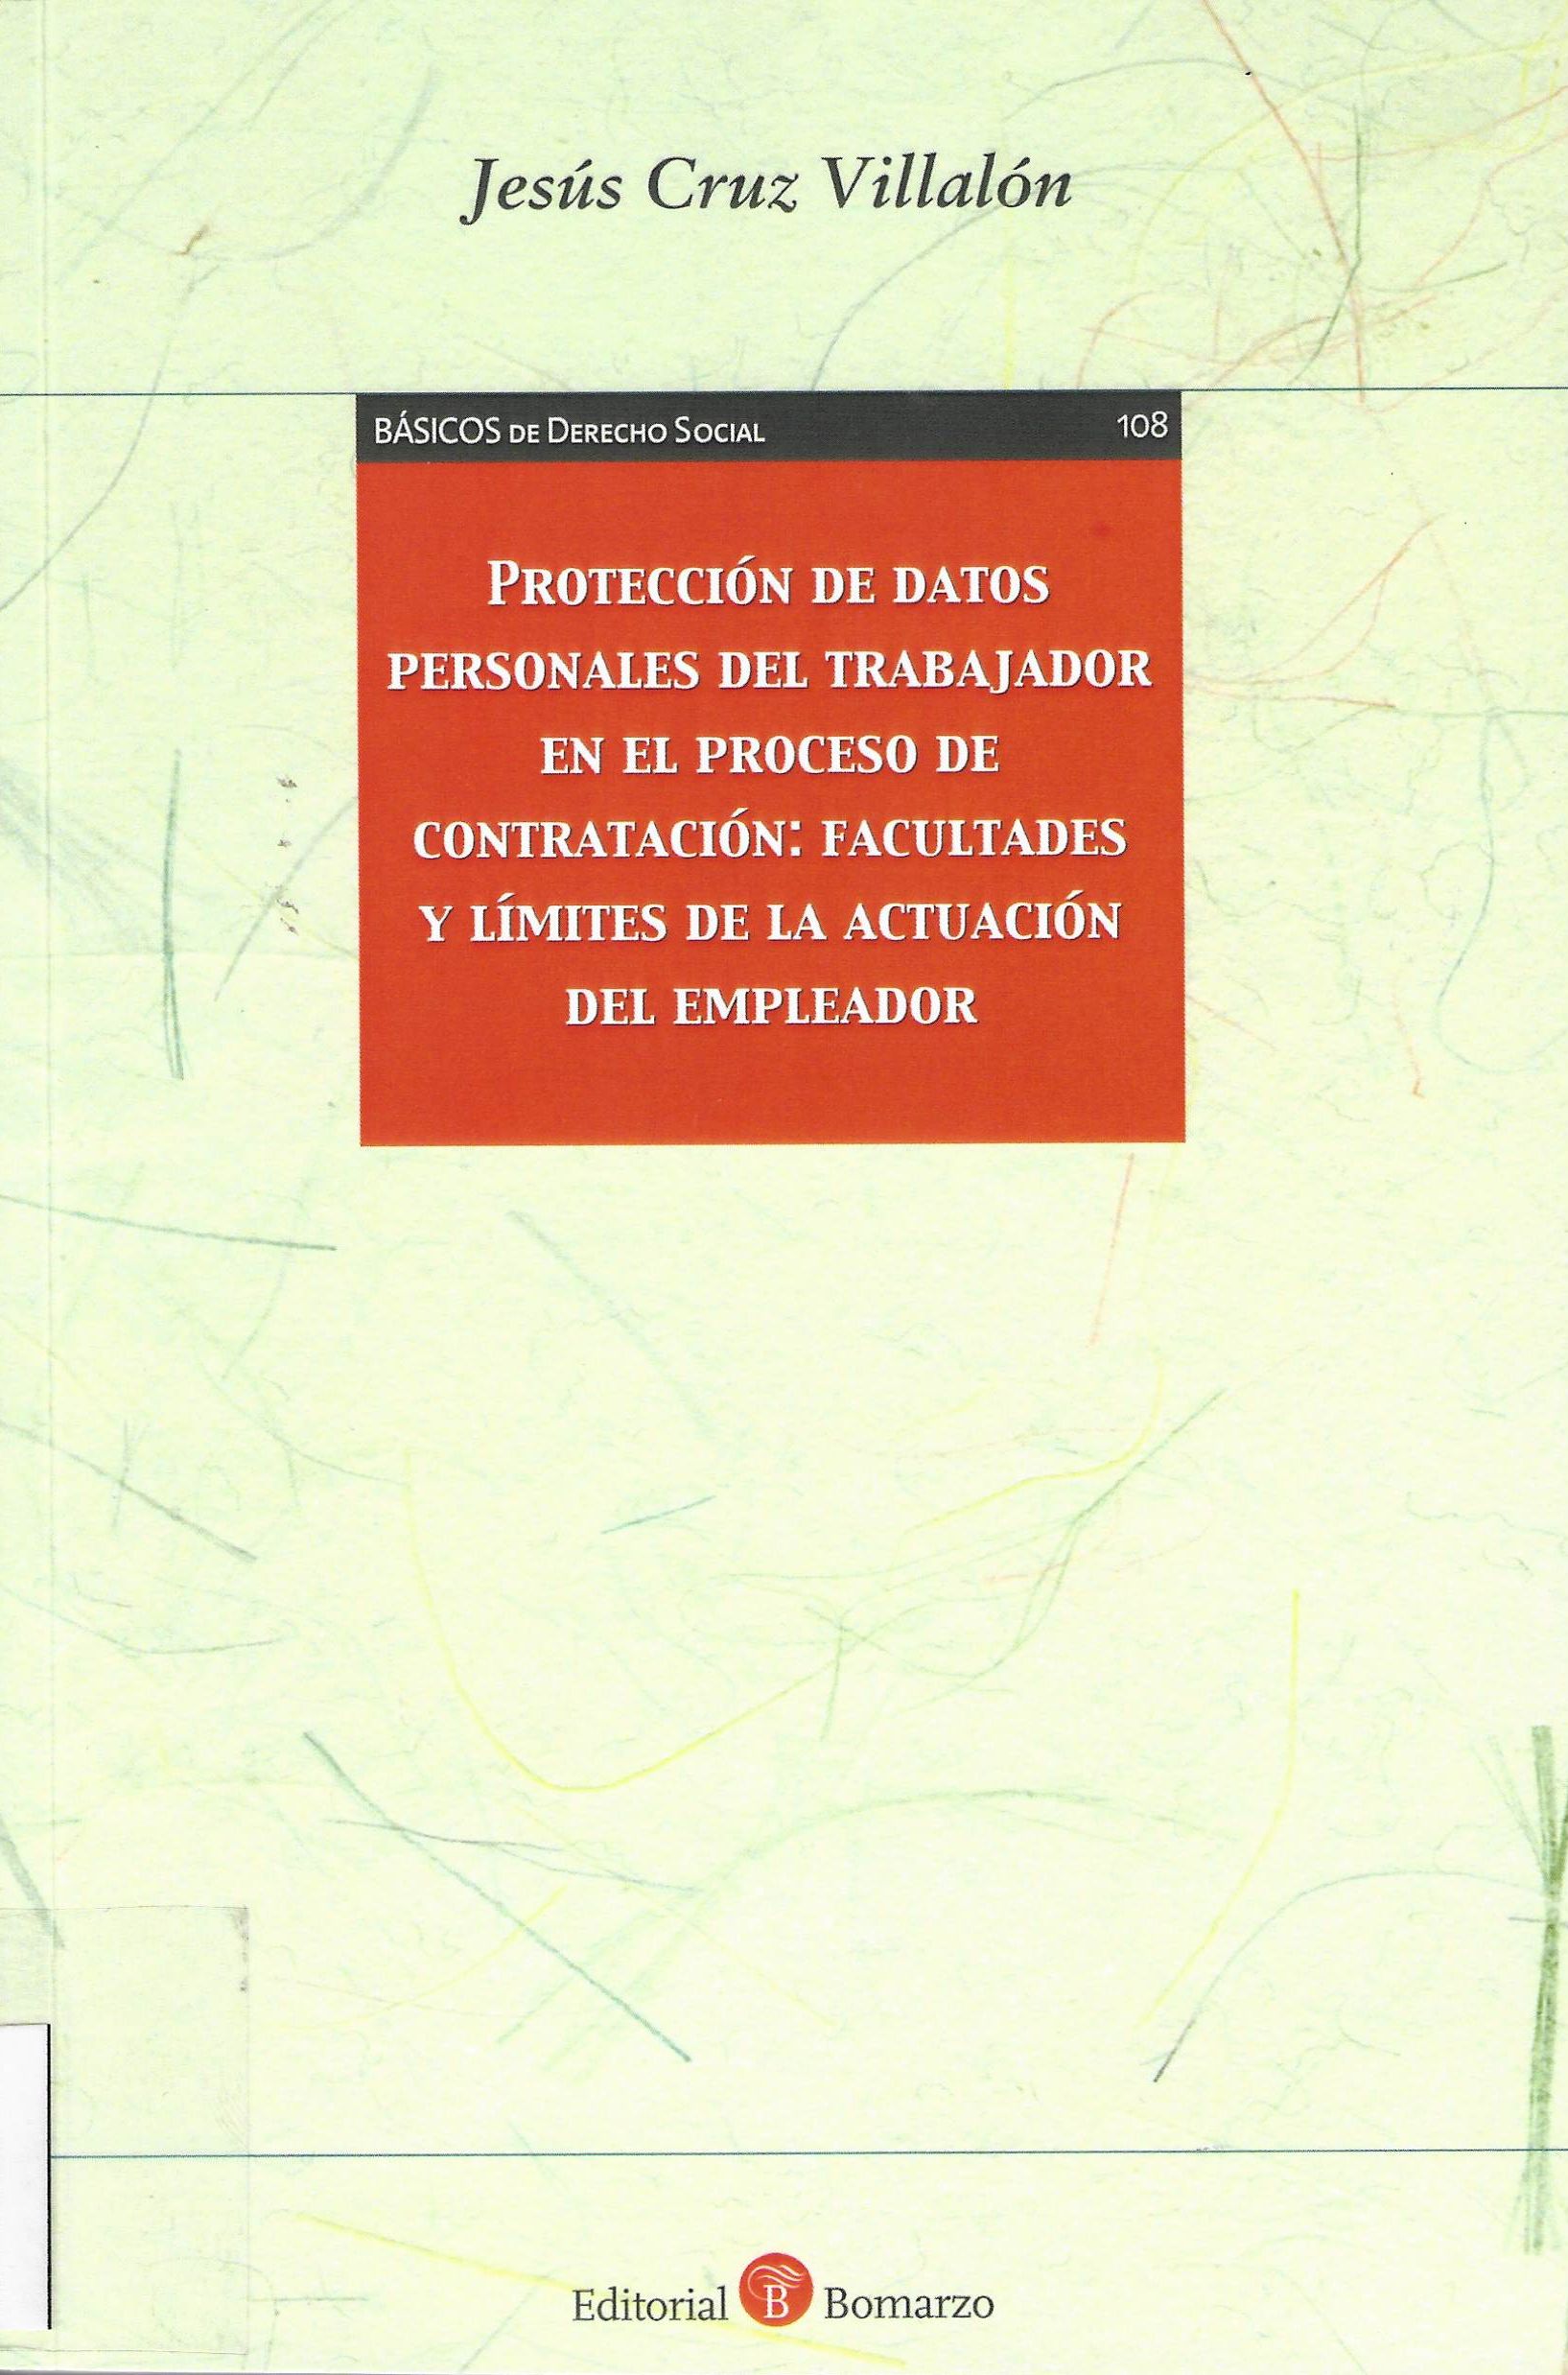 Imagen de portada del libro Protección de datos personales del trabajador en el proceso de contratación: facultades y límites de la actuación del empleador